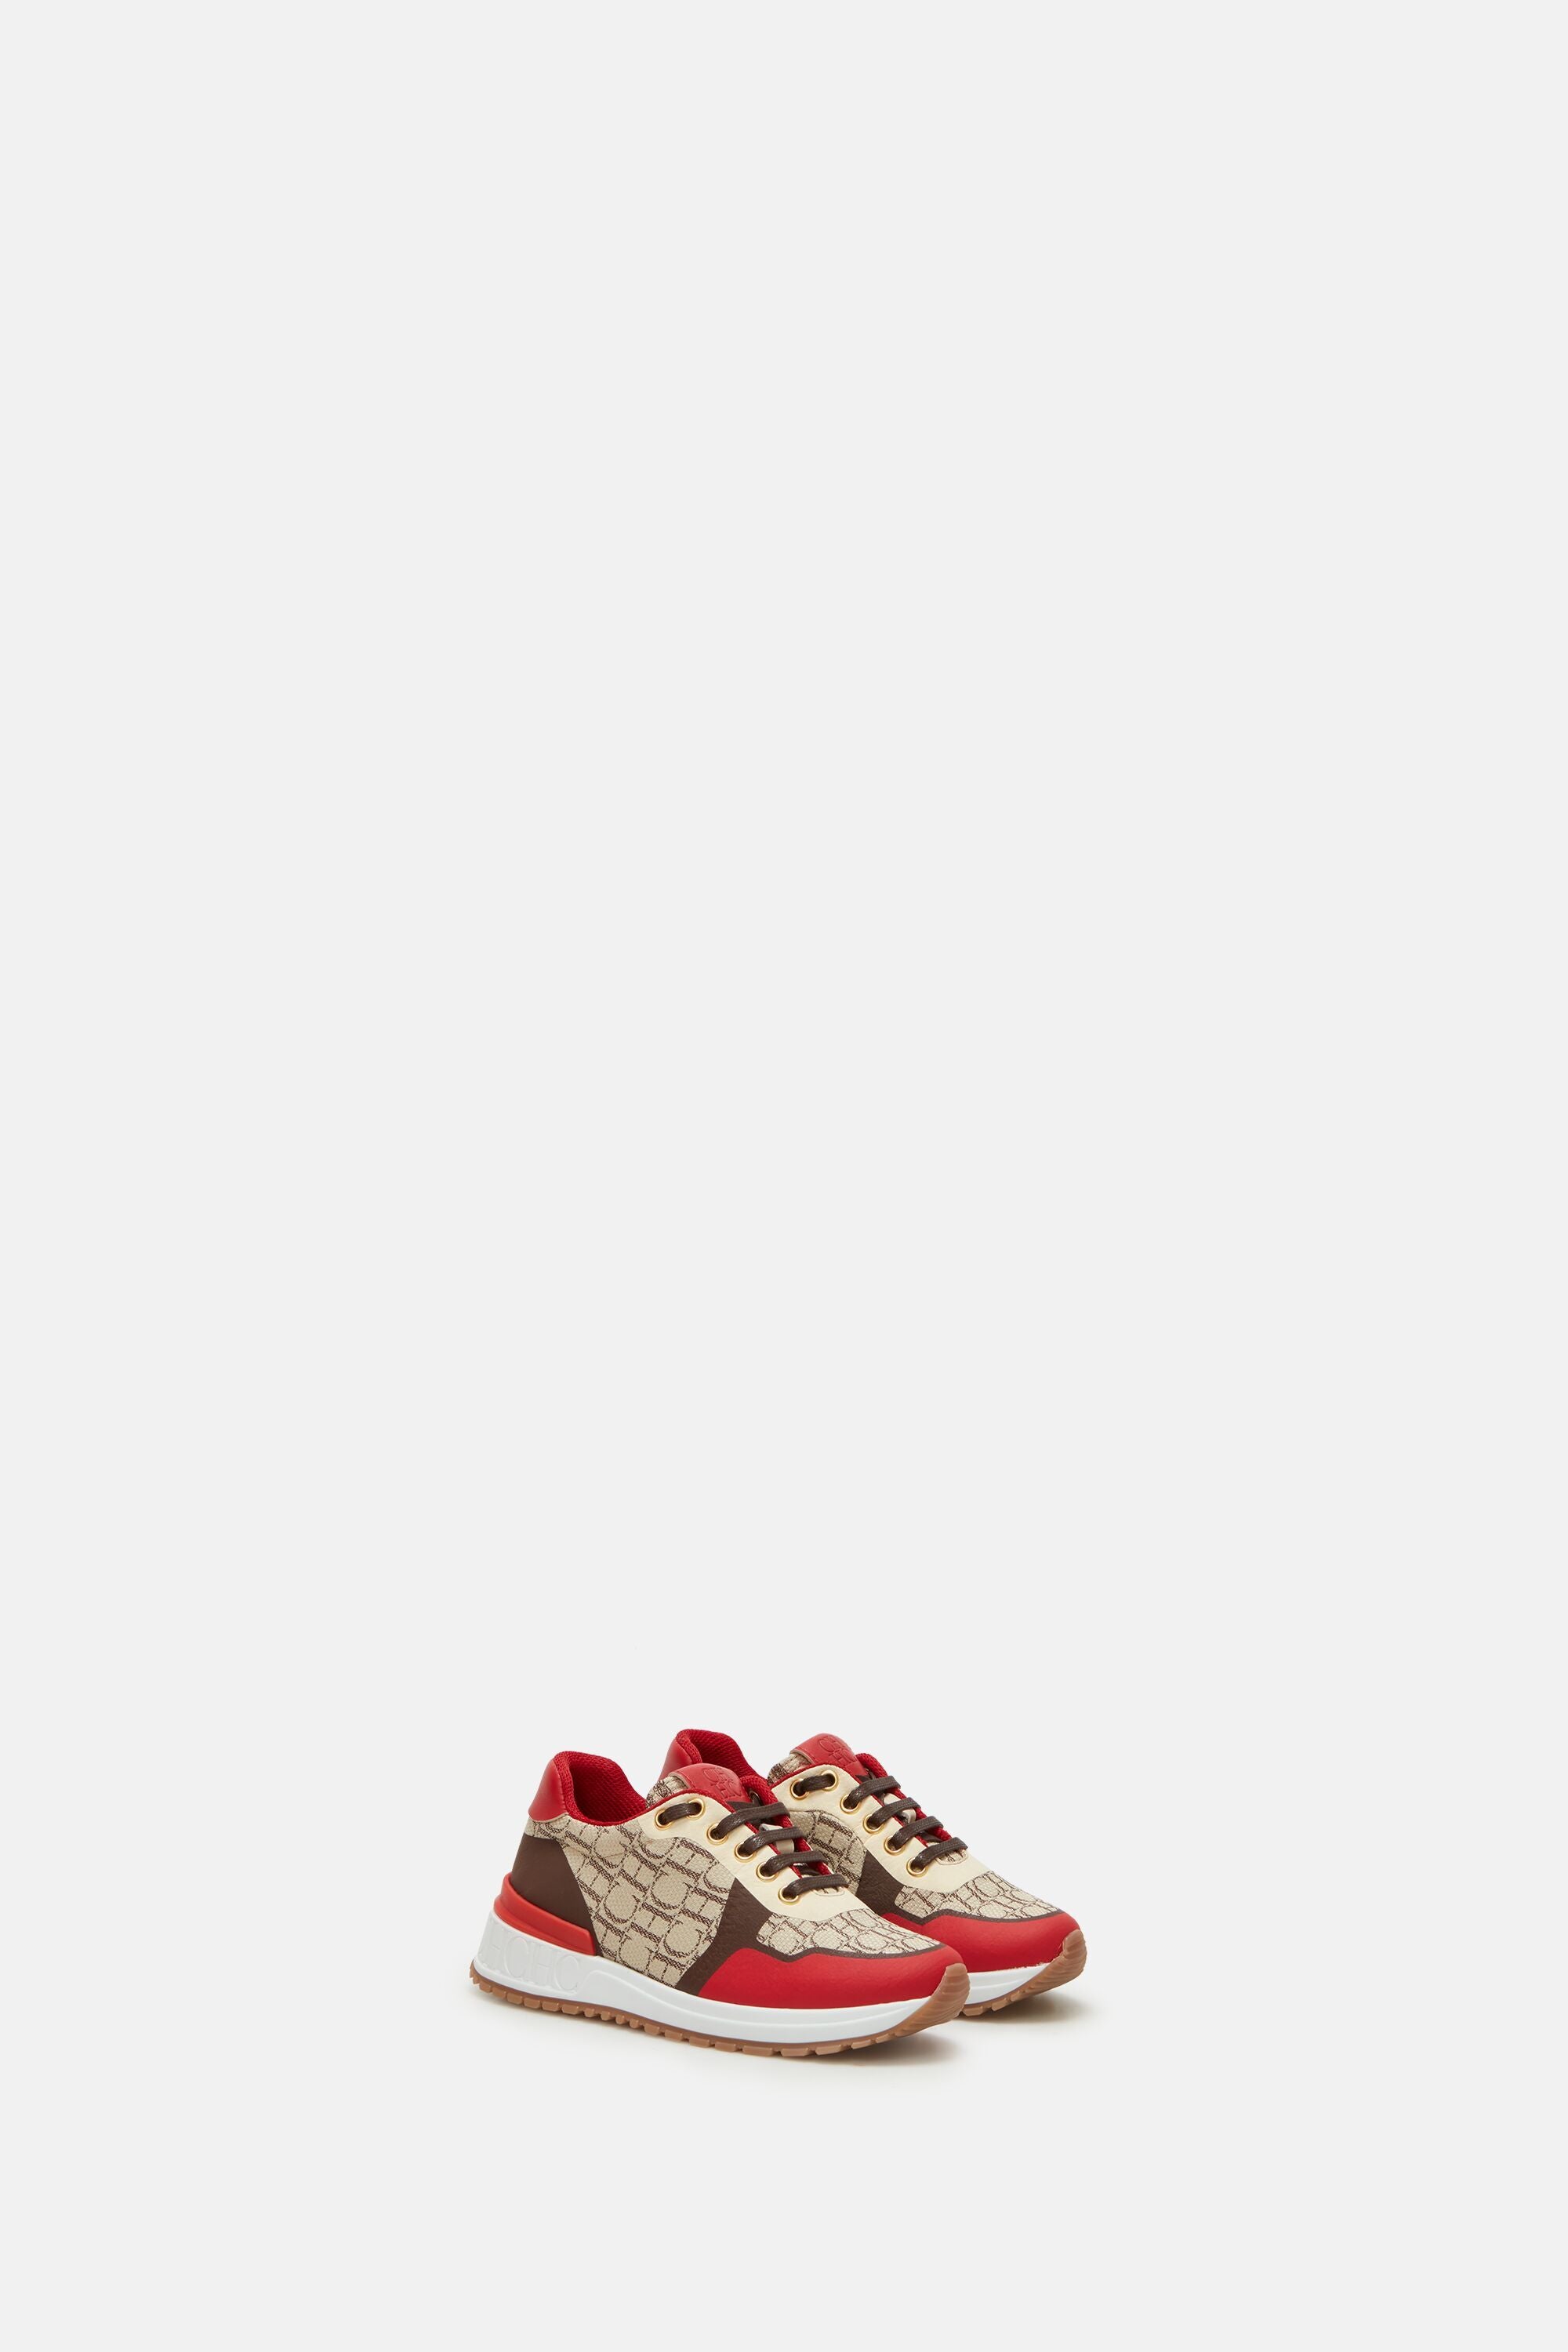 Louis Vuitton Shoes Sneakers Men : acquista su Pinterest